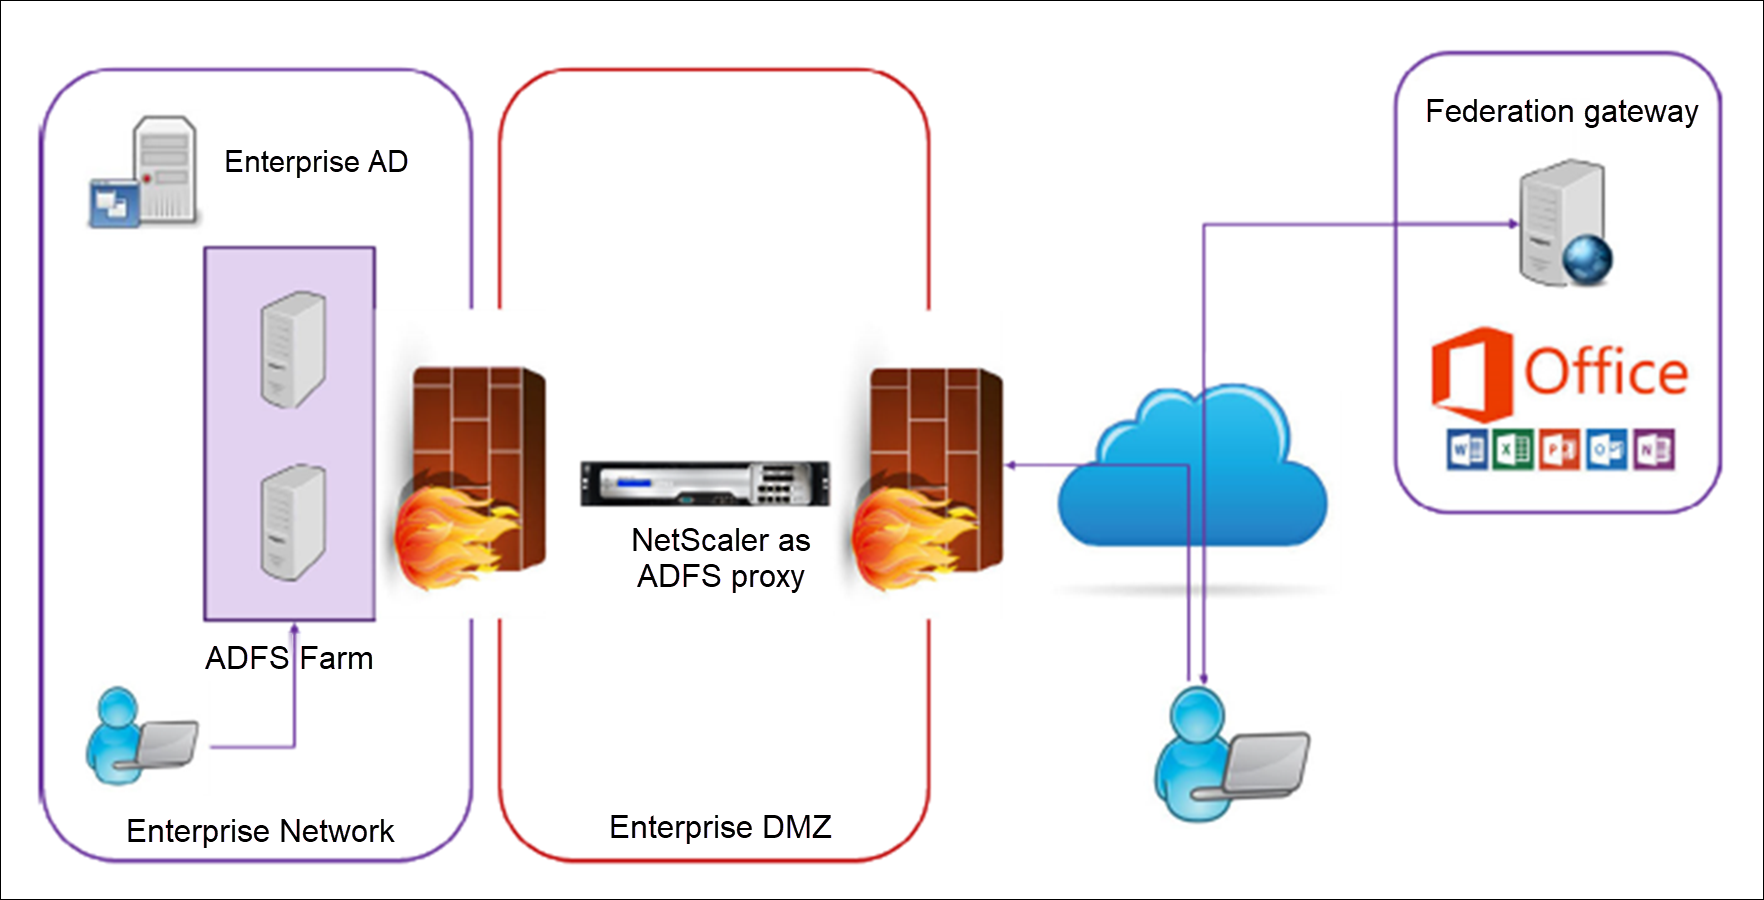 Deploy a NetScaler instance as an ADFS proxy